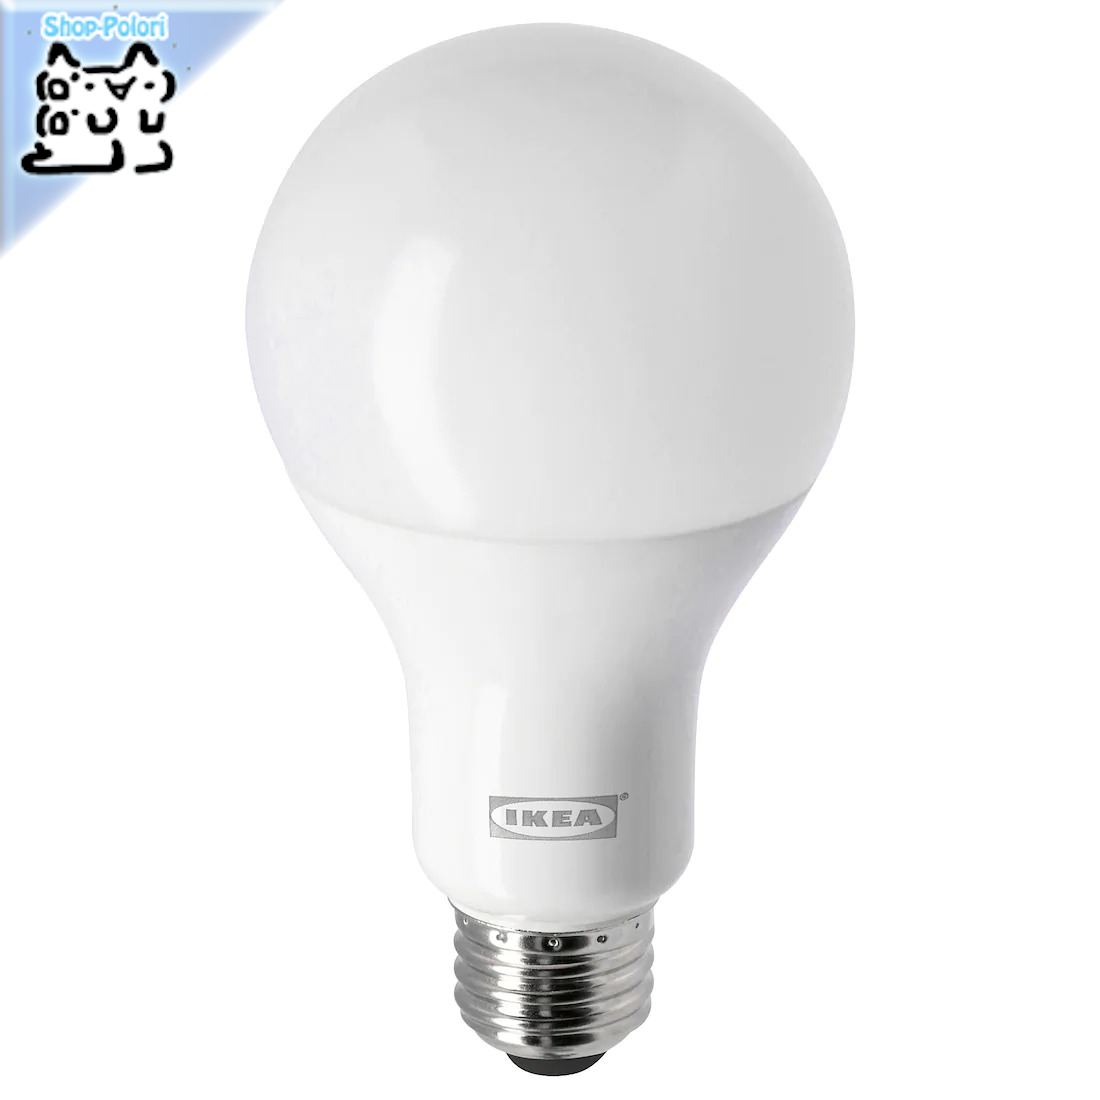 【IKEA Original】LEDARE -レーダレ- LED電球 E26 1160ルーメン 色温度調光 球形 オパールホワイト 2700 ケルビン画像